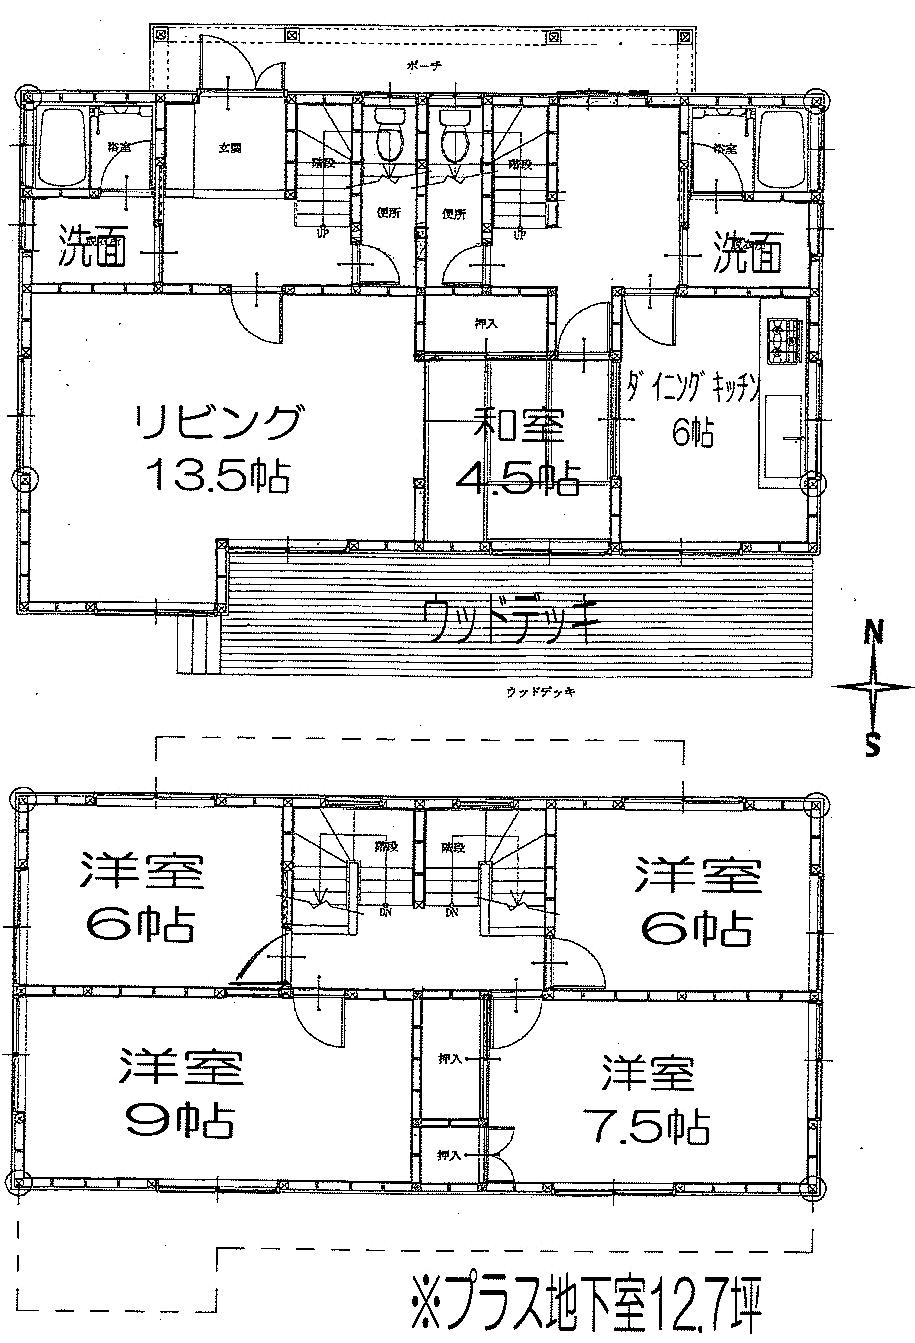 Floor plan. 10.8 million yen, 6DK, Land area 311.35 sq m , Building area 173.89 sq m 6DK